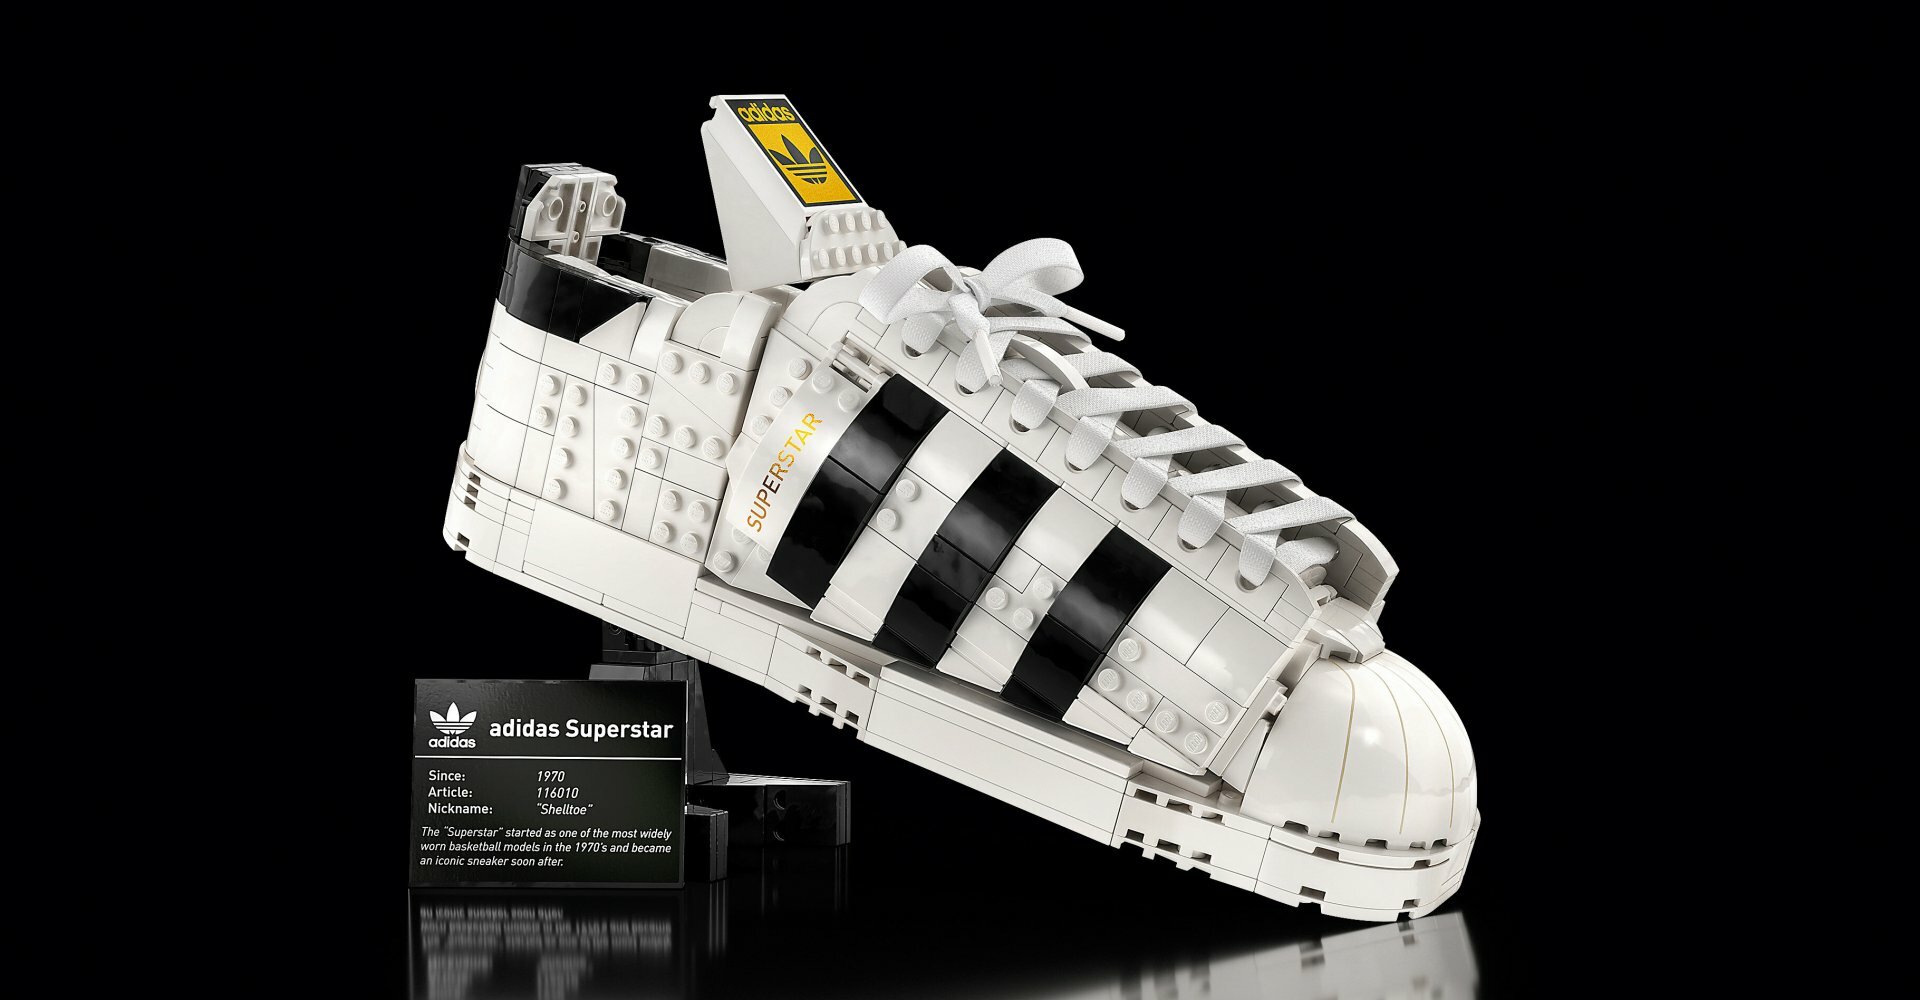 Komprimere råolie ozon Nu kan du bygge legendarisk adidas sneaker i LEGO | Connery